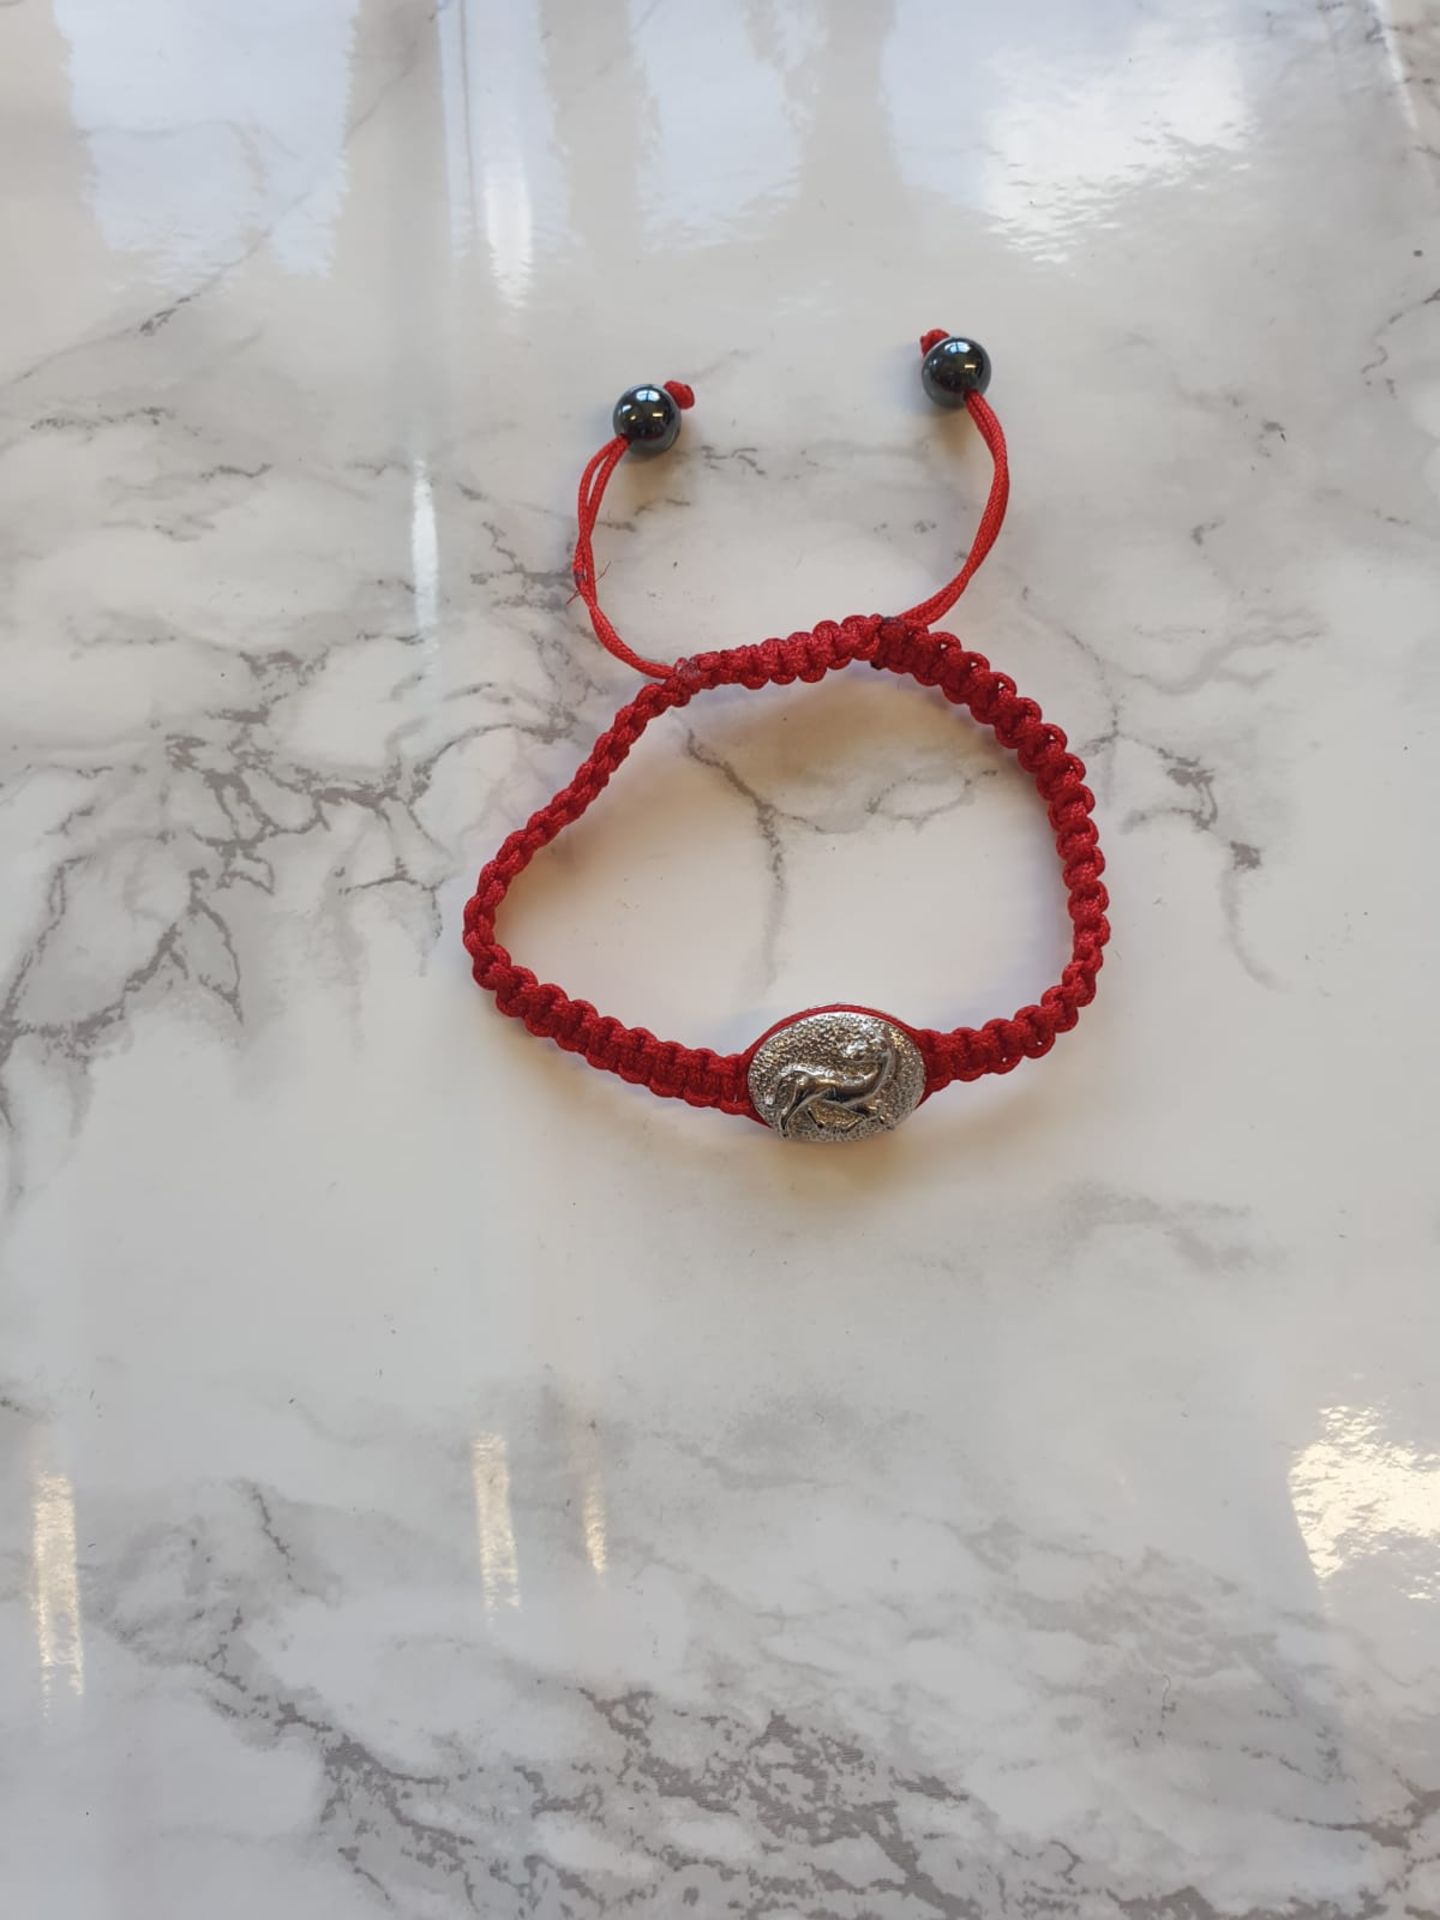 16 X Red Horse Black Bead Chinese Zodiac Animal Year Adjustable Beaded Bracelet - Image 4 of 4